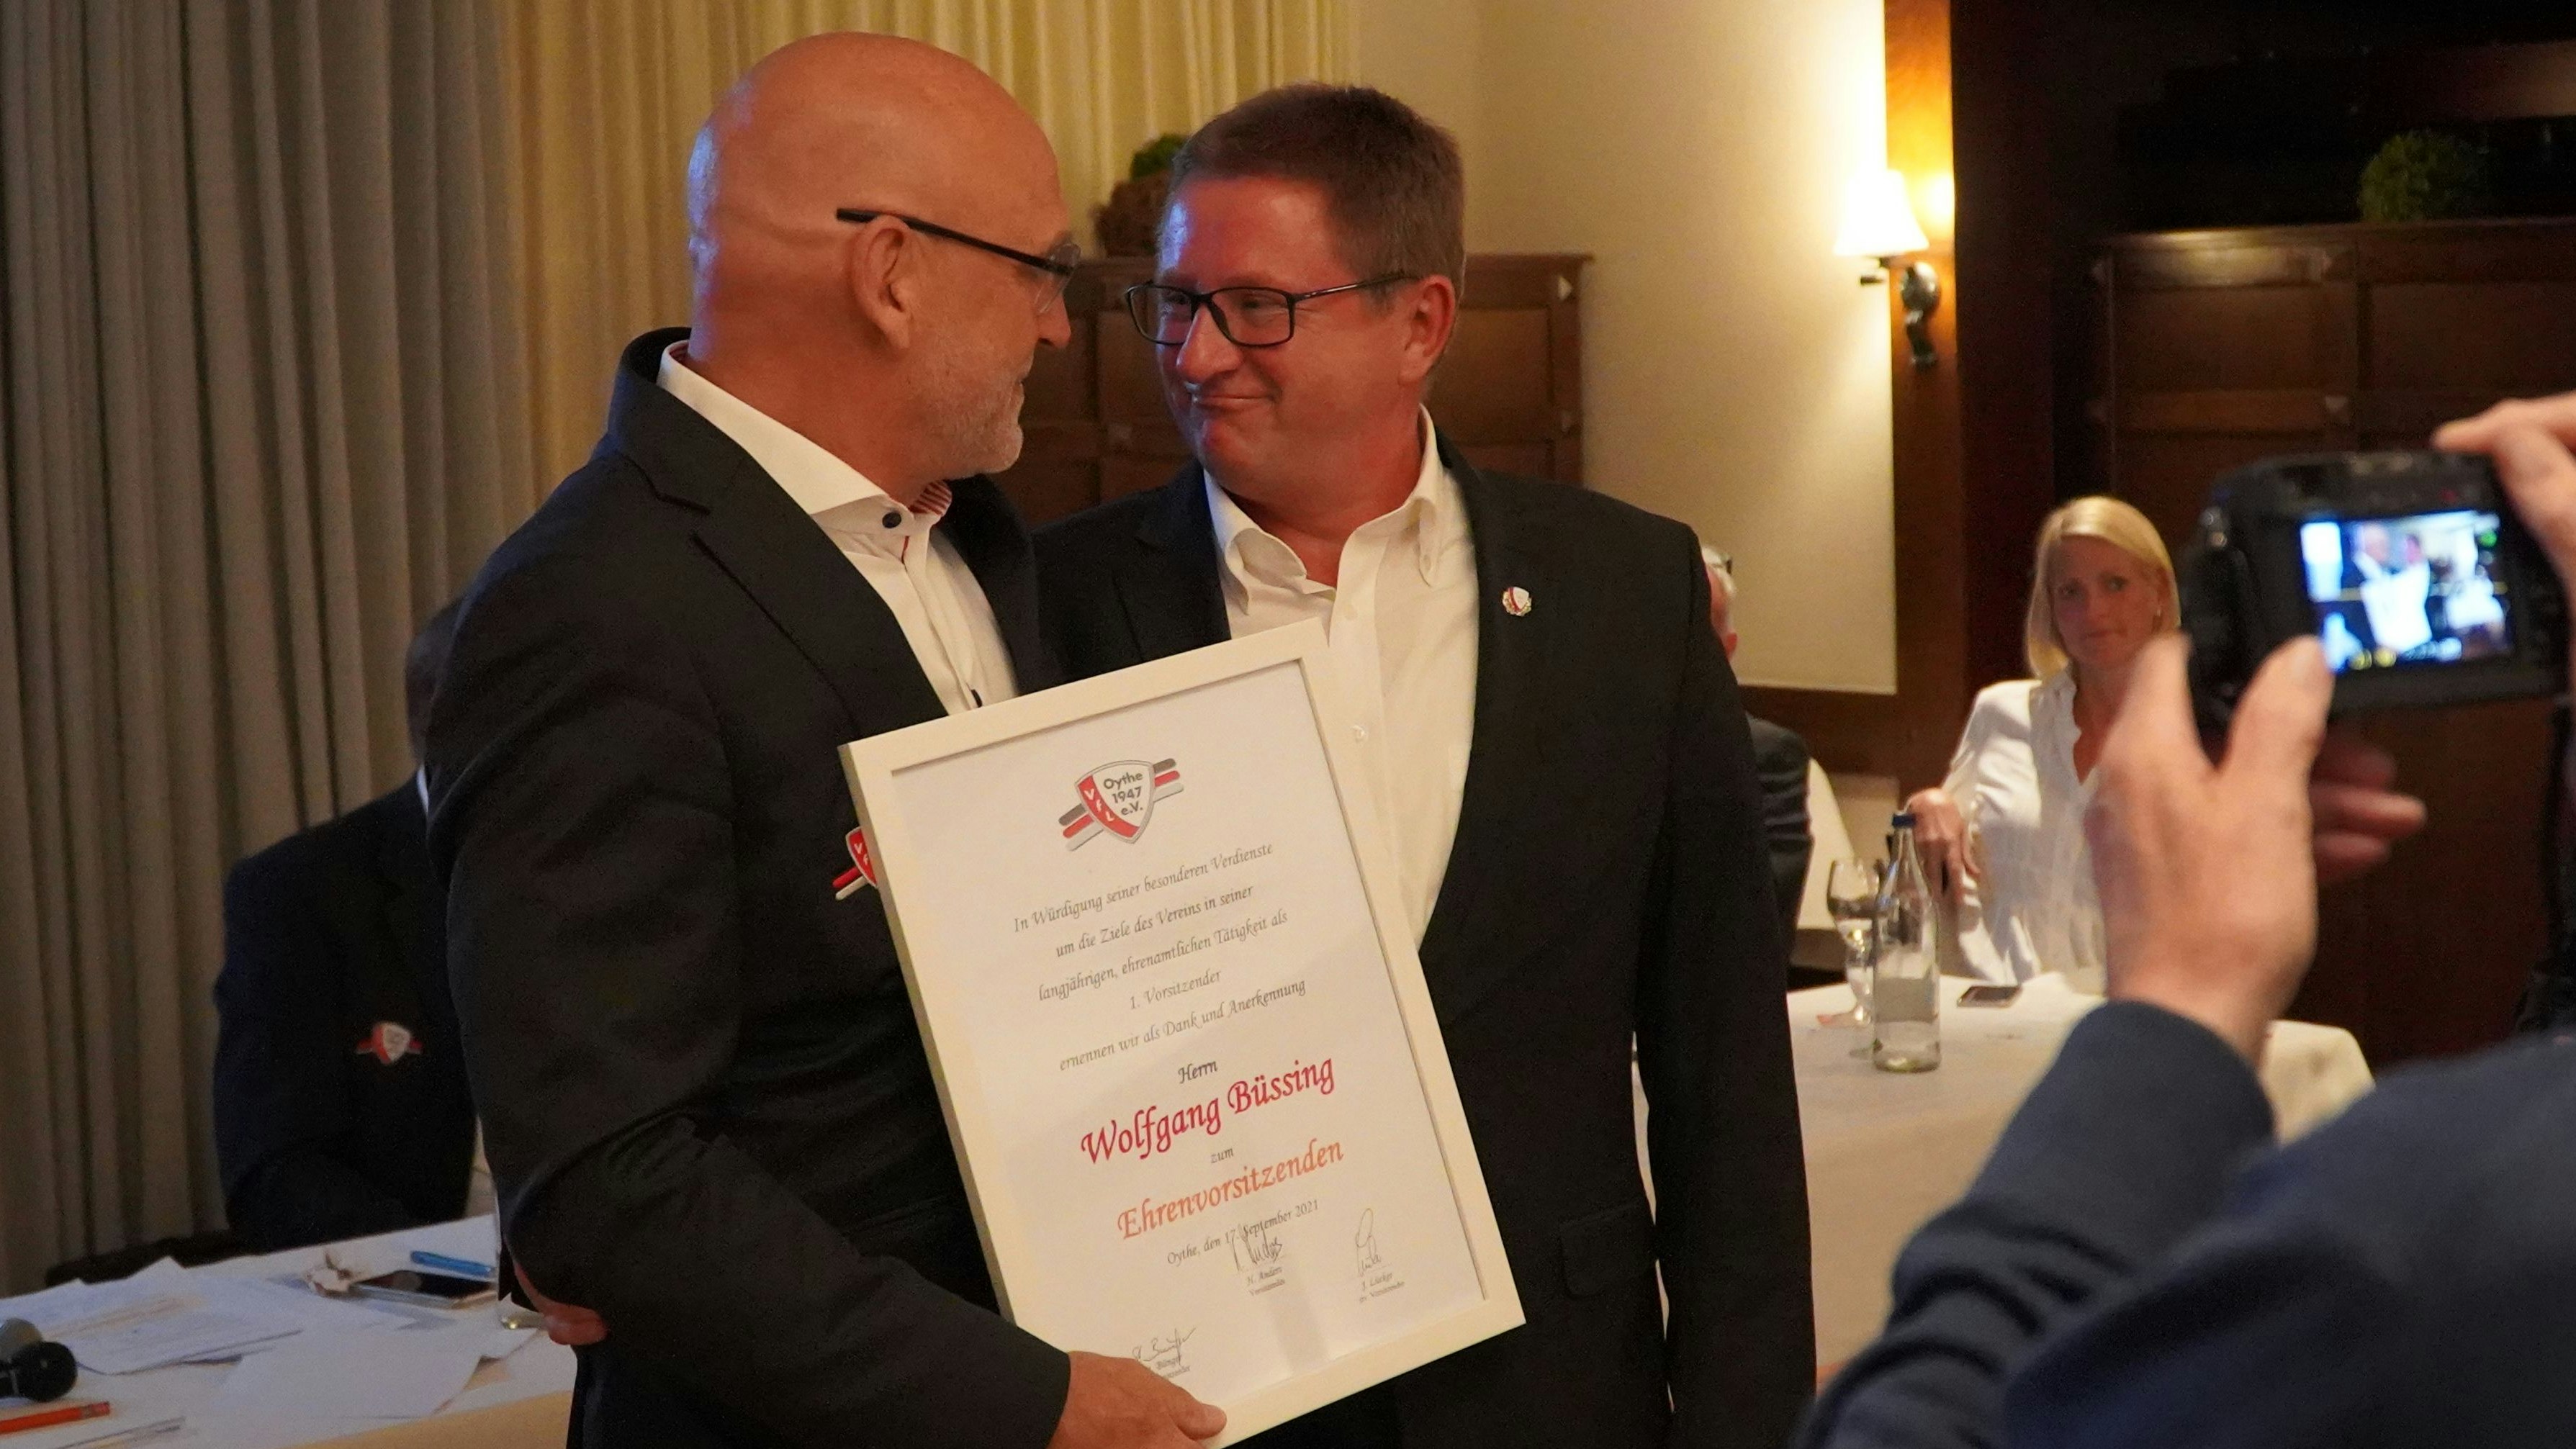 Gratulation: Der neue VfL-Vorsitzende Hauke Anders (links) und der neue Ehrenvorsitzende Wolfgang Büssing. Foto: VfL/Müller